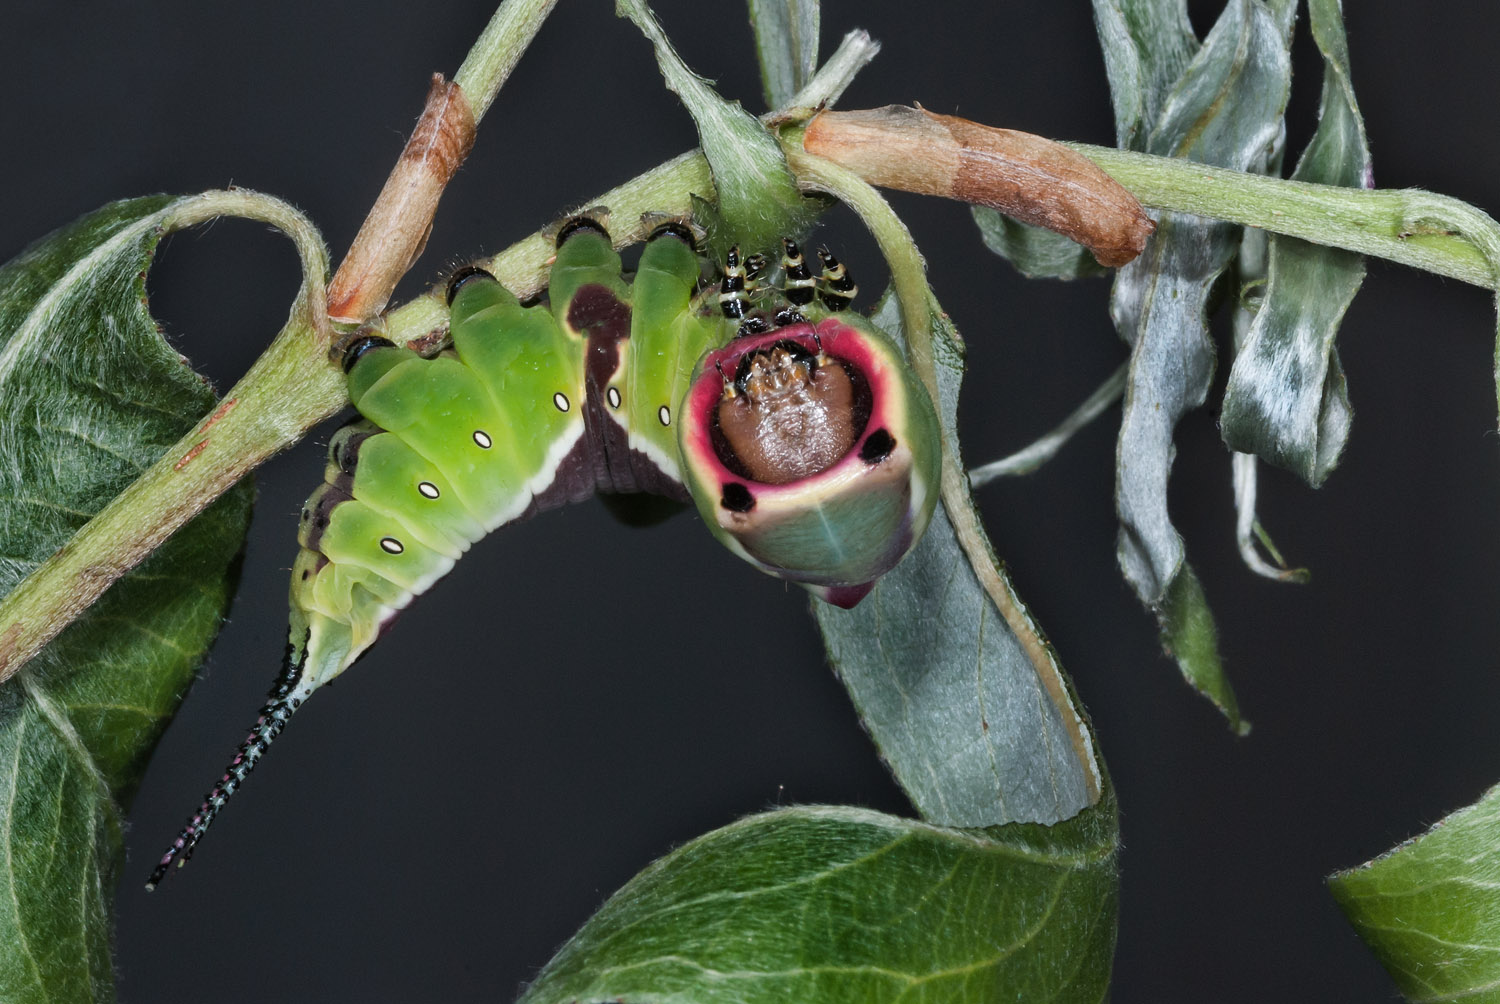 Puss Moth caterpillar after the 4th ecdysis